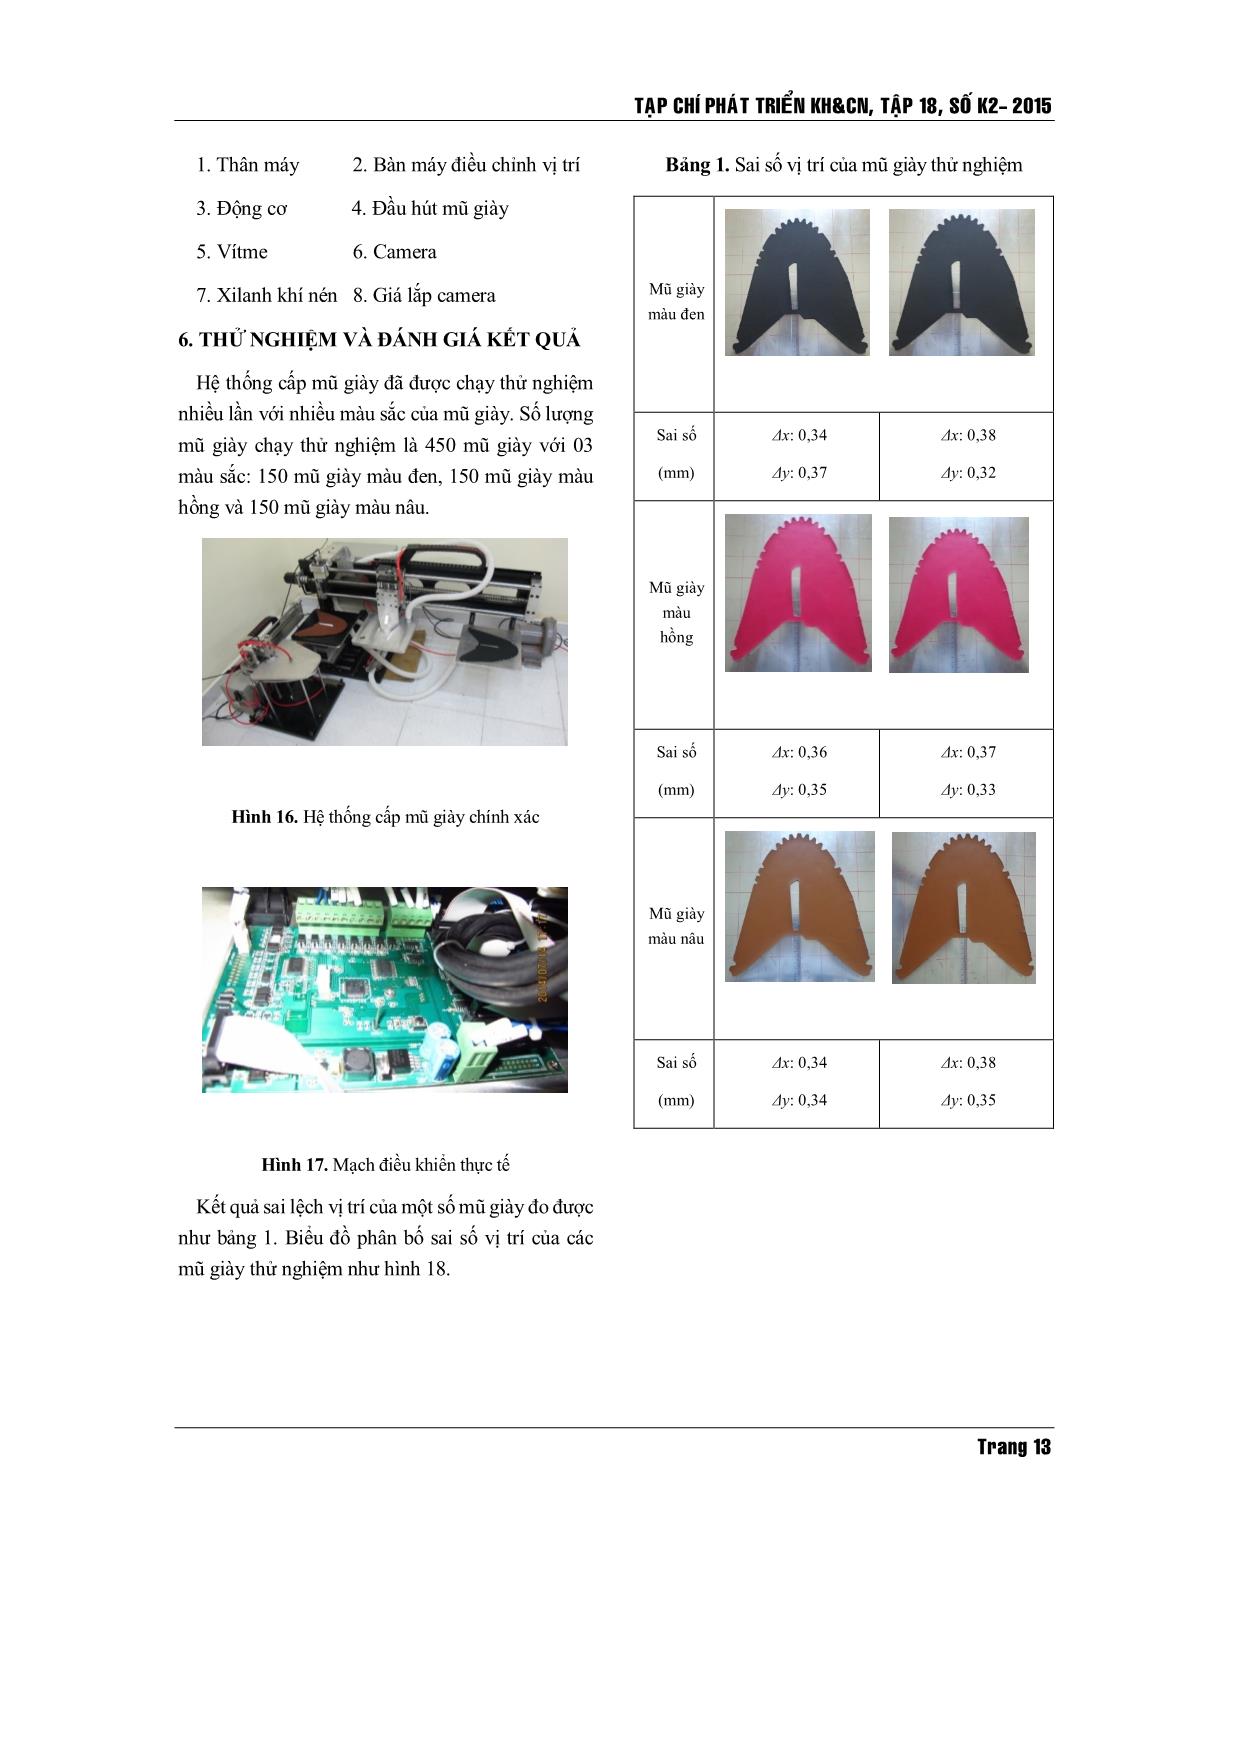 Thiết kế và chế tạo hệ thống cấp mũ giày chính xác cho máy in lụa trong công nghiệp giày trang 9